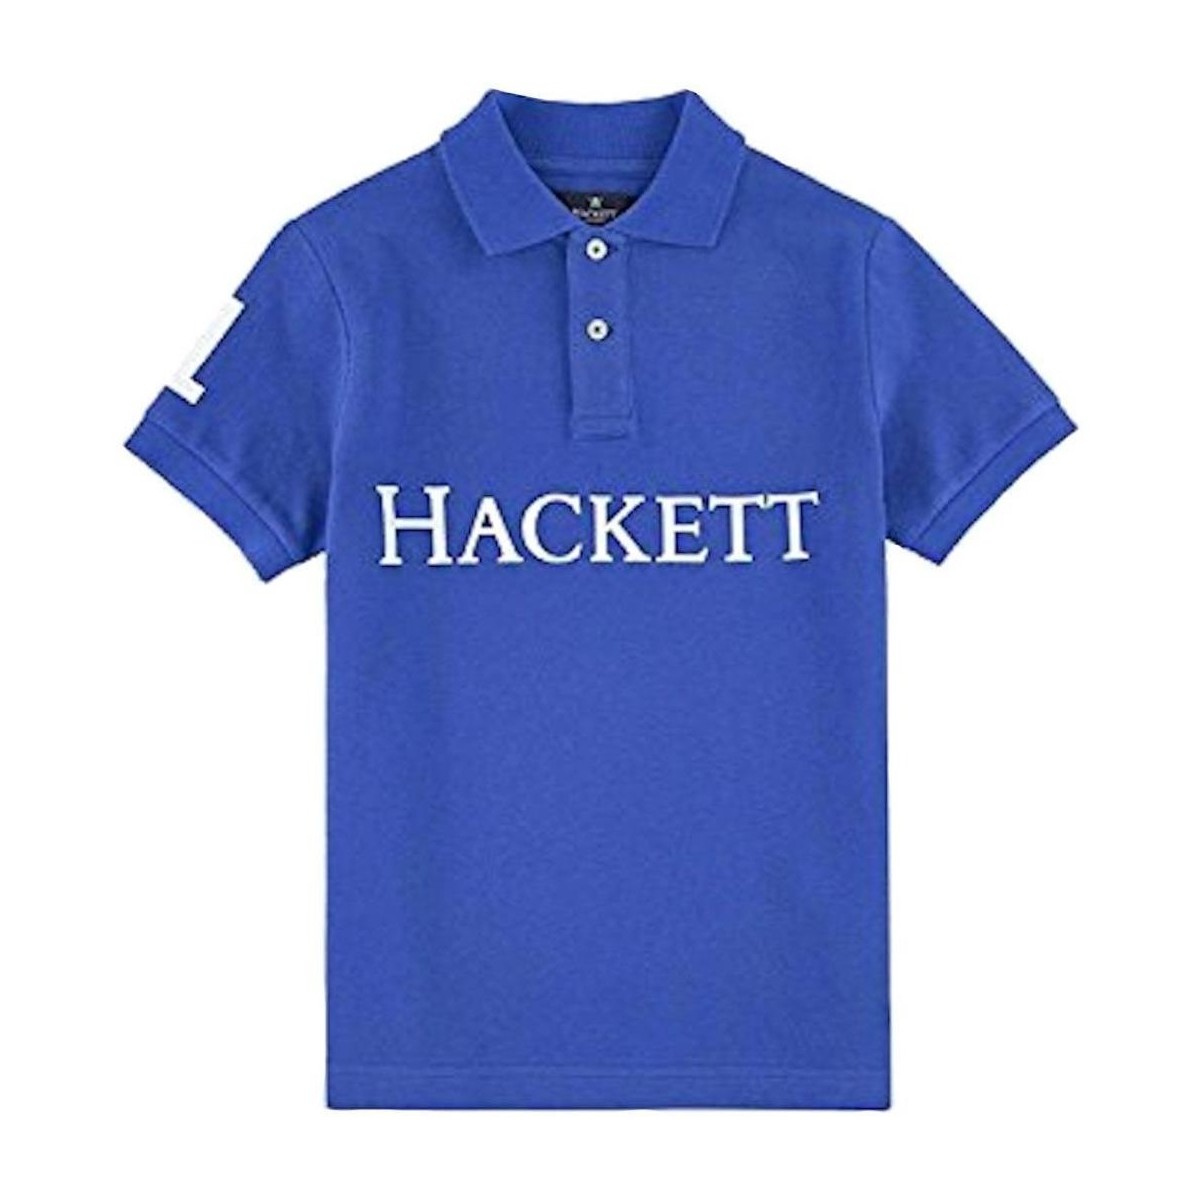 vaatteet Pojat Lyhythihainen t-paita Hackett  Sininen